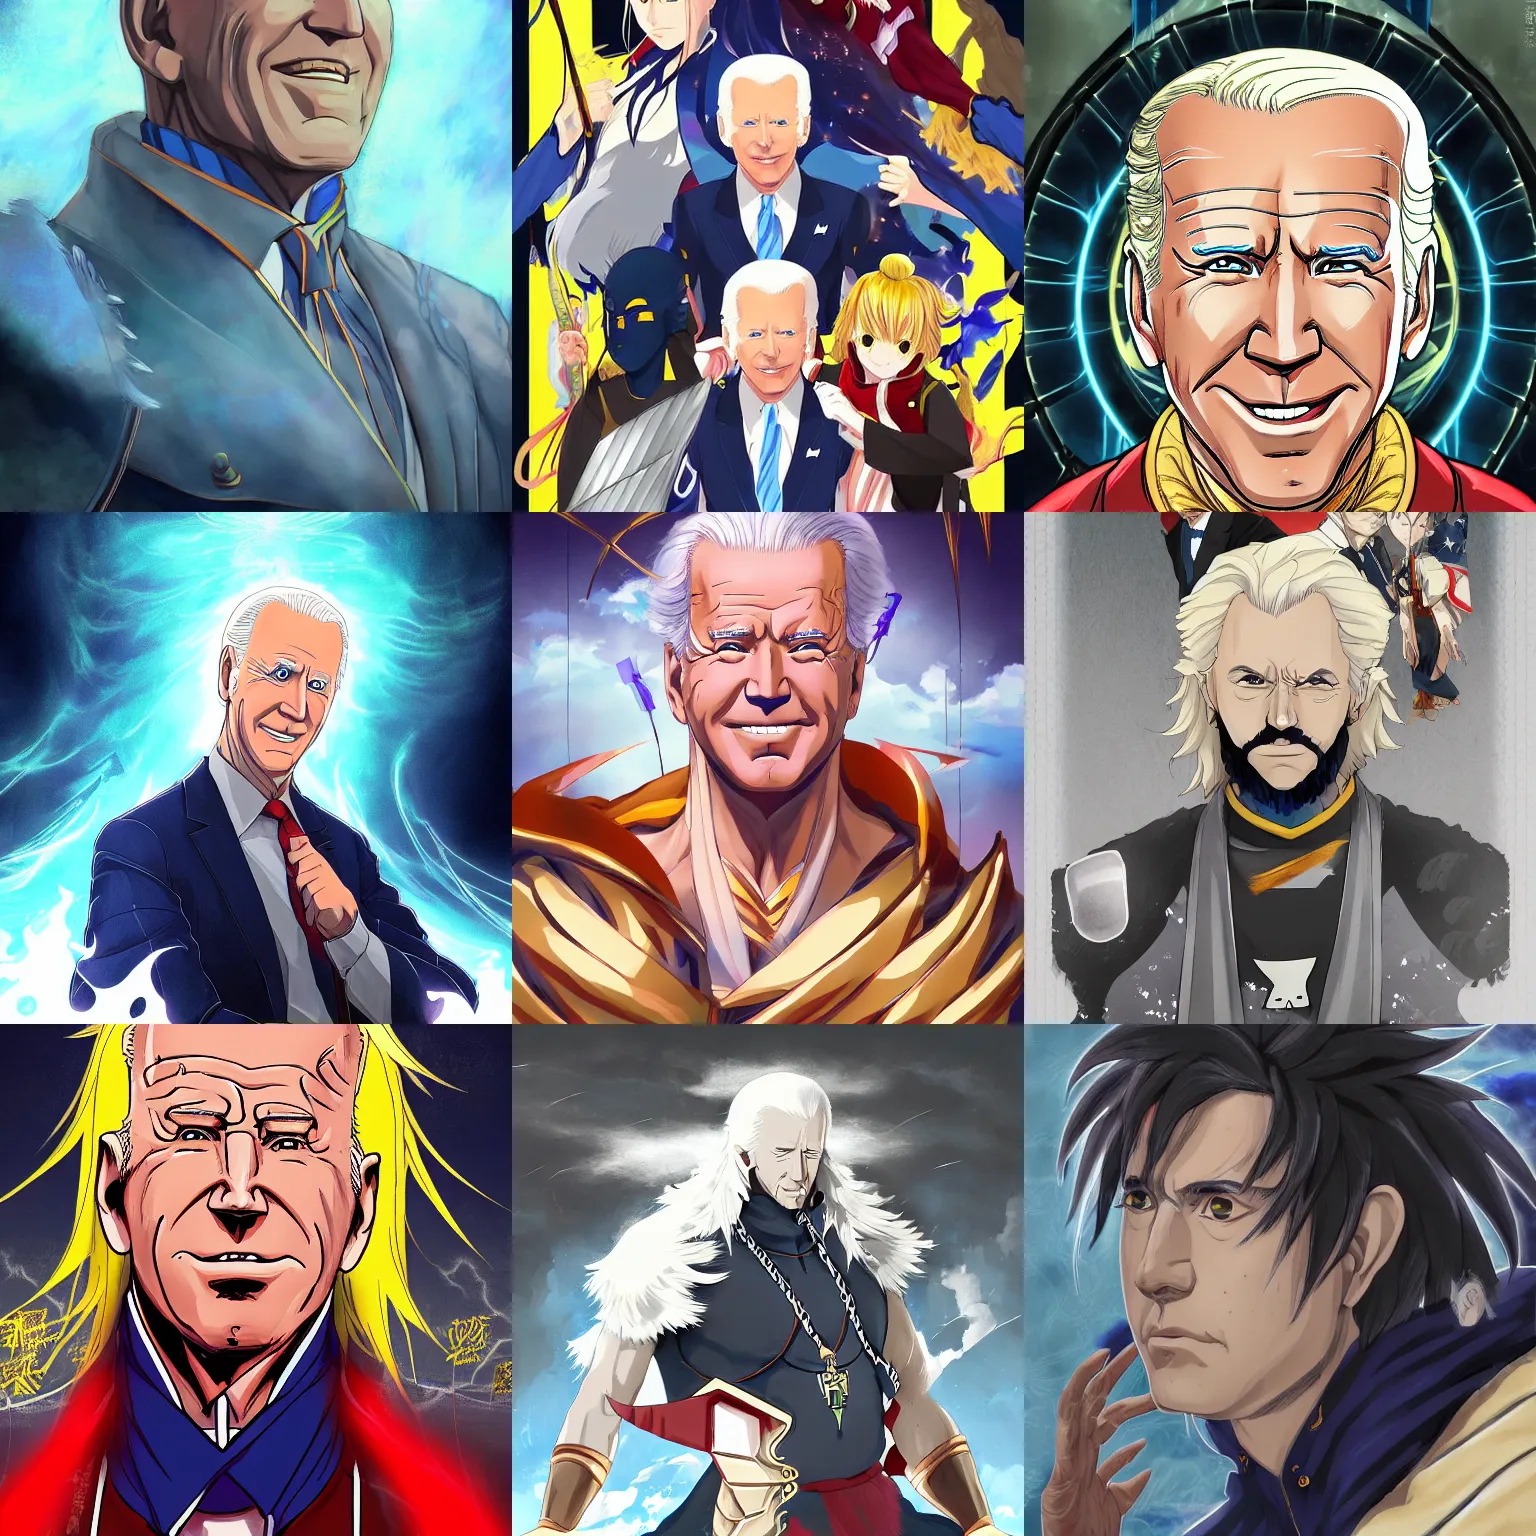 Prompt: Portrait of the Joe Biden Thunder God, Anime Fantasy Illustration by Tomoyuki Yamasaki, Studio Kyoto, Madhouse, Ufotable, trending on artstation